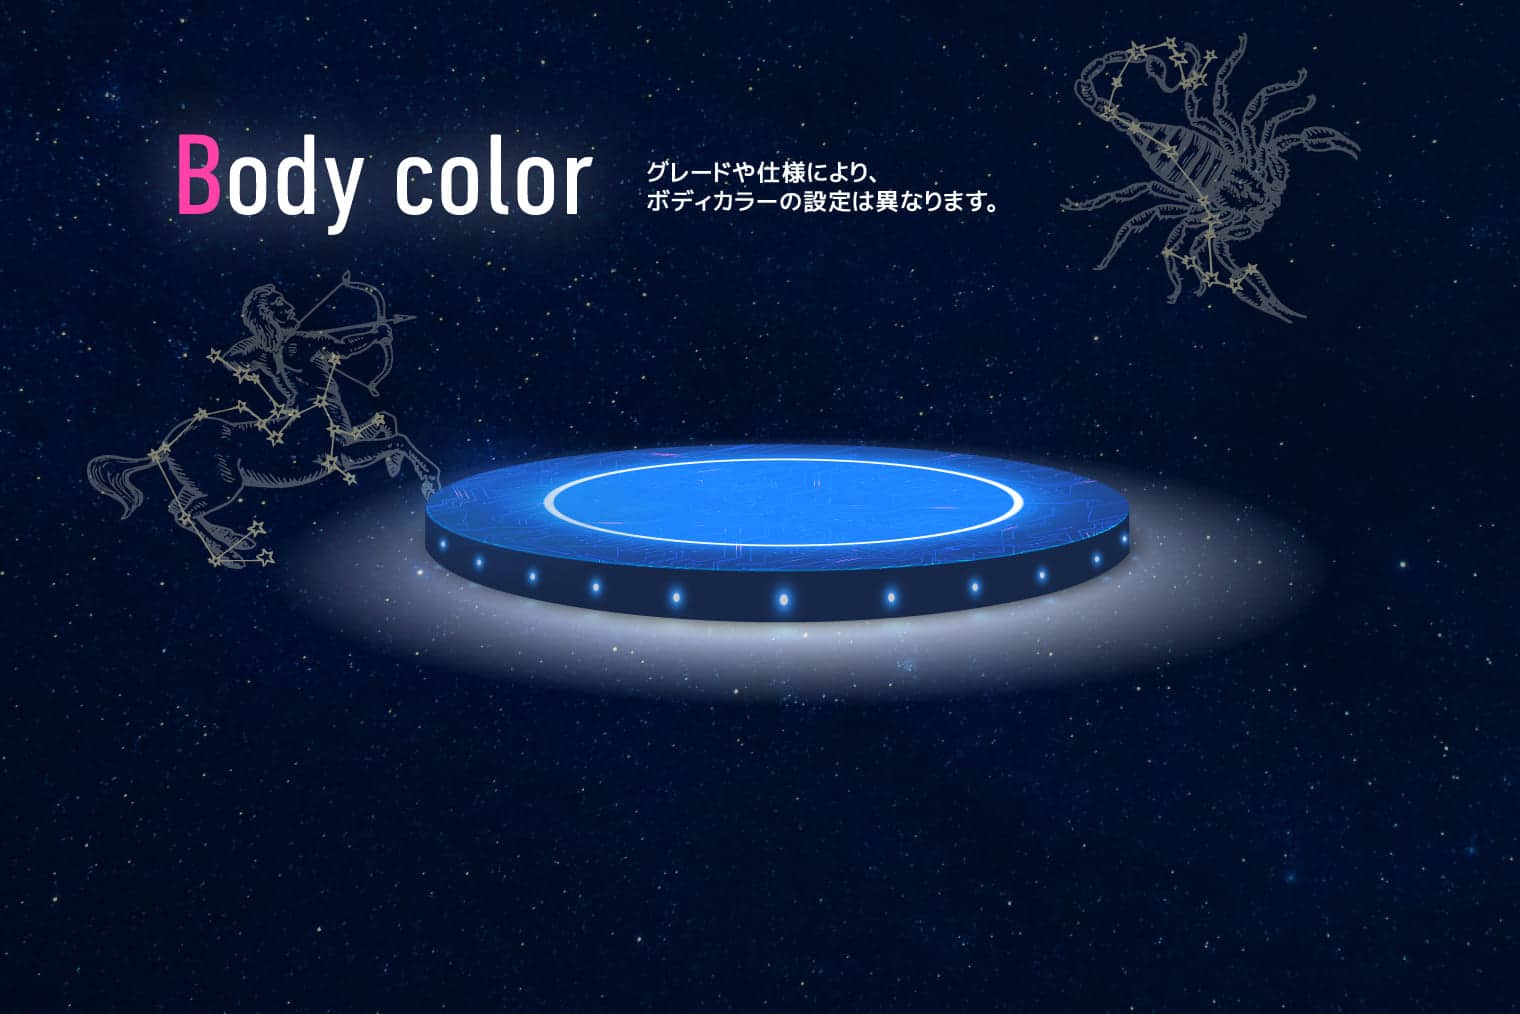 Body color